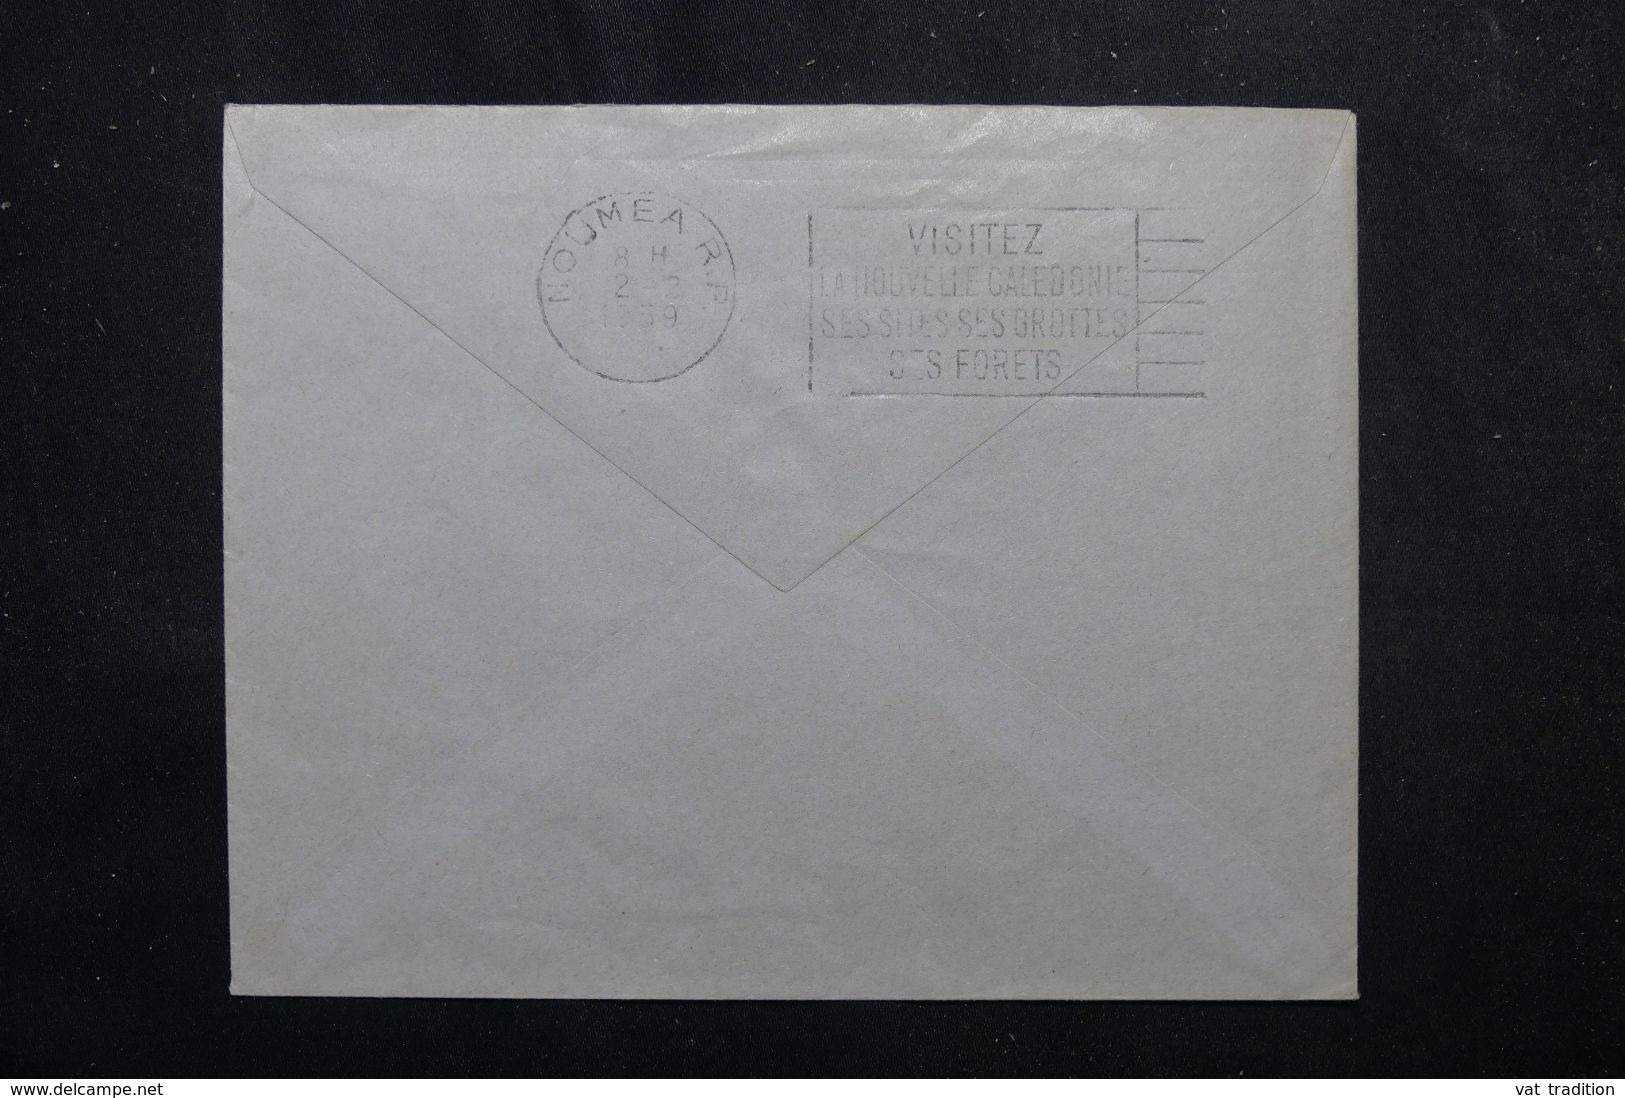 NOUVELLE CALÉDONIE - Affranchissement Plaisant De Pagoumene Sur Enveloppe  En 1959 Pour Nouméa - L 63289 - Brieven En Documenten